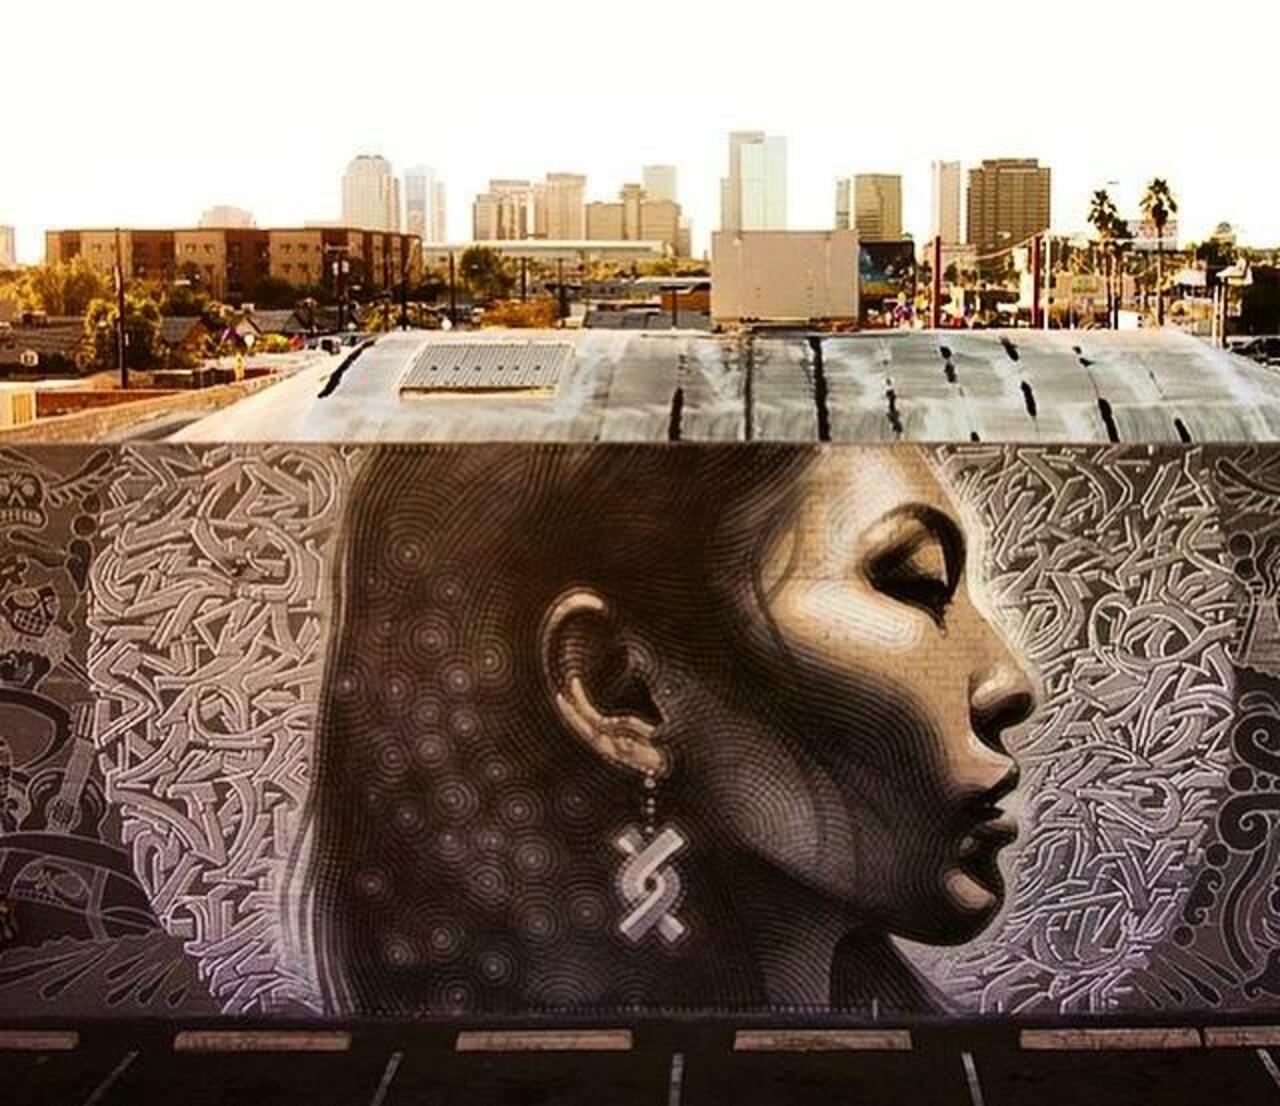 Latest Street Art work by El Mac in Phoenix, Arizona

#art #mural #graffiti #streetart http://t.co/TRP3tskBWJ